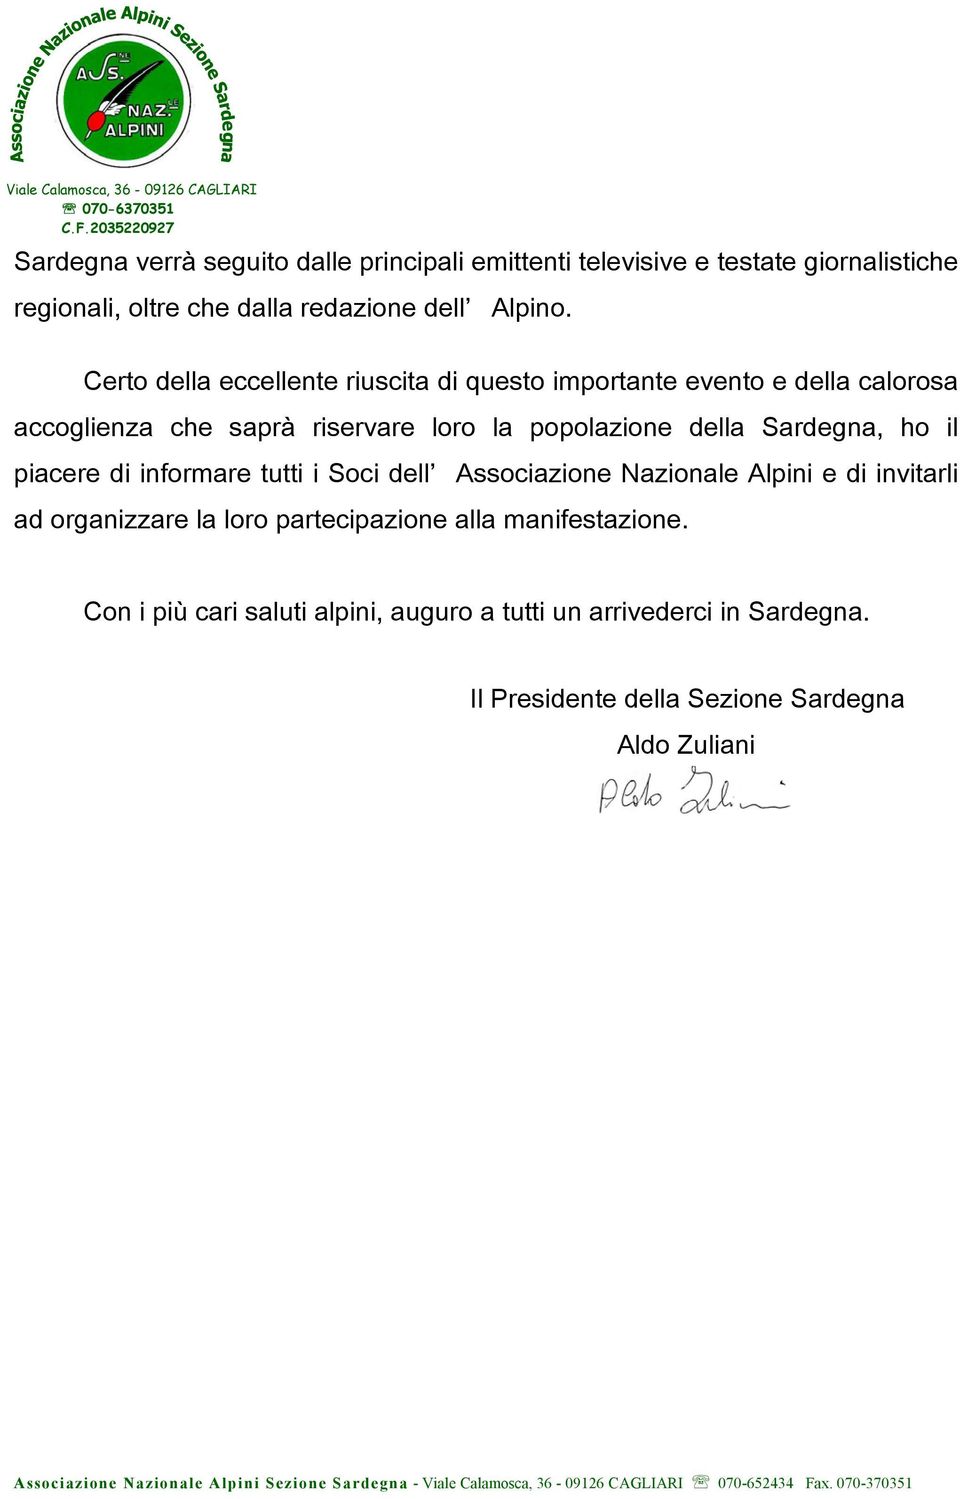 Sardegna, ho il piacere di informare tutti i Soci dell Associazione Nazionale Alpini e di invitarli ad organizzare la loro partecipazione